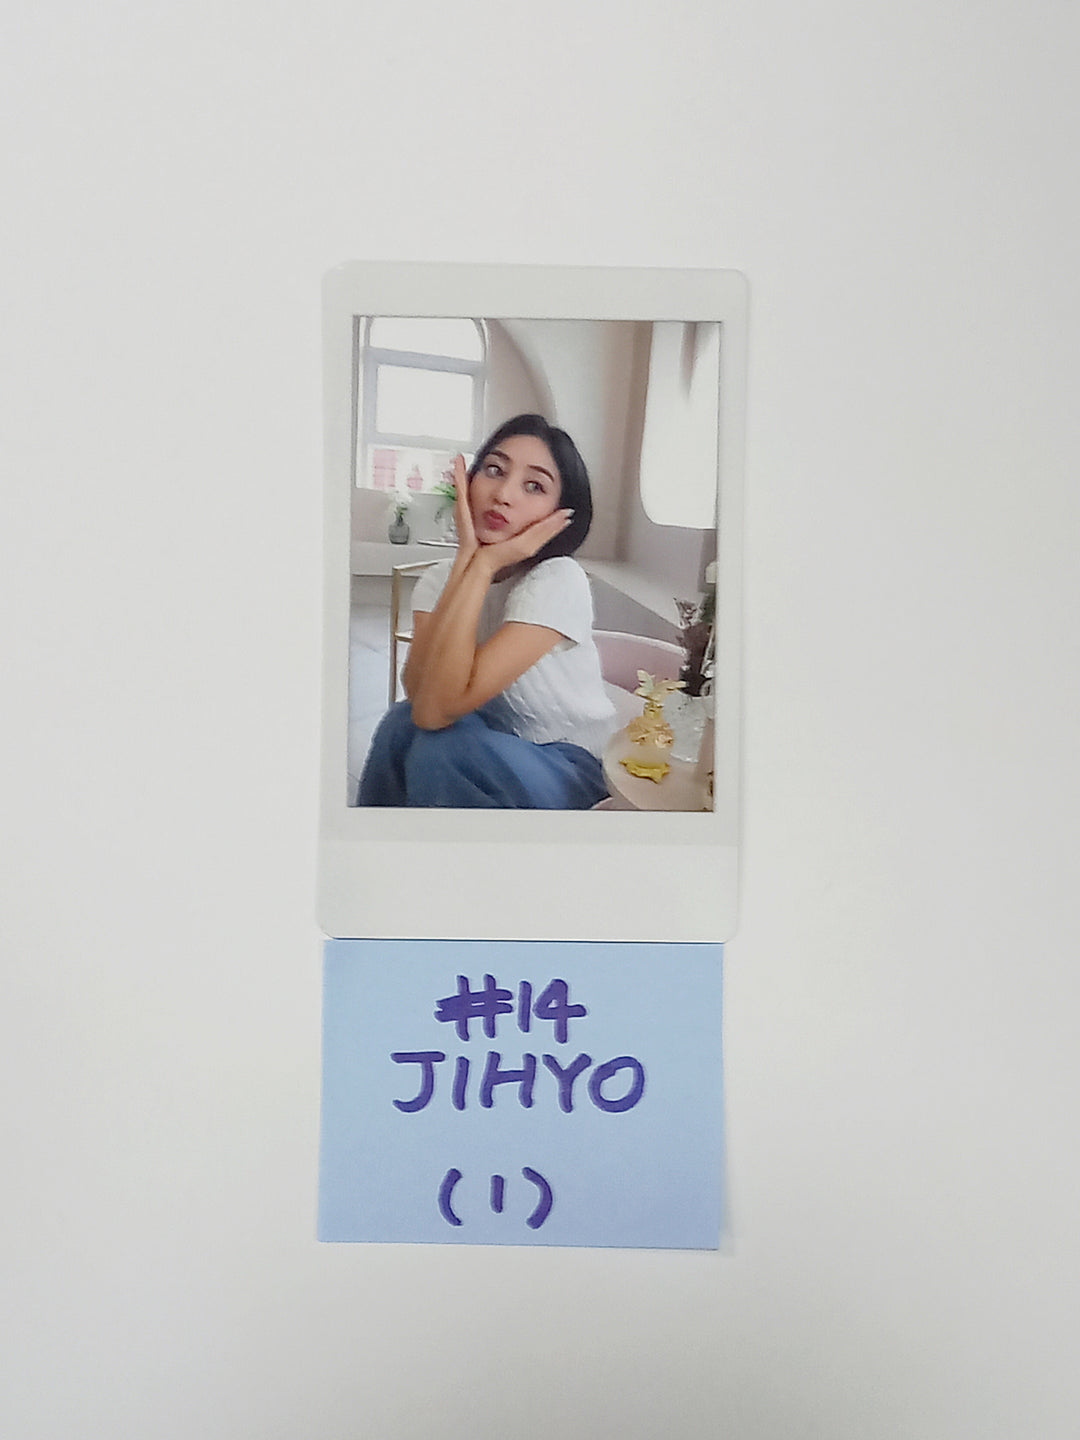 트와이스 7주년 EVENT - JYP SHOP 스페셜 기프트 폴라로이드 포토카드